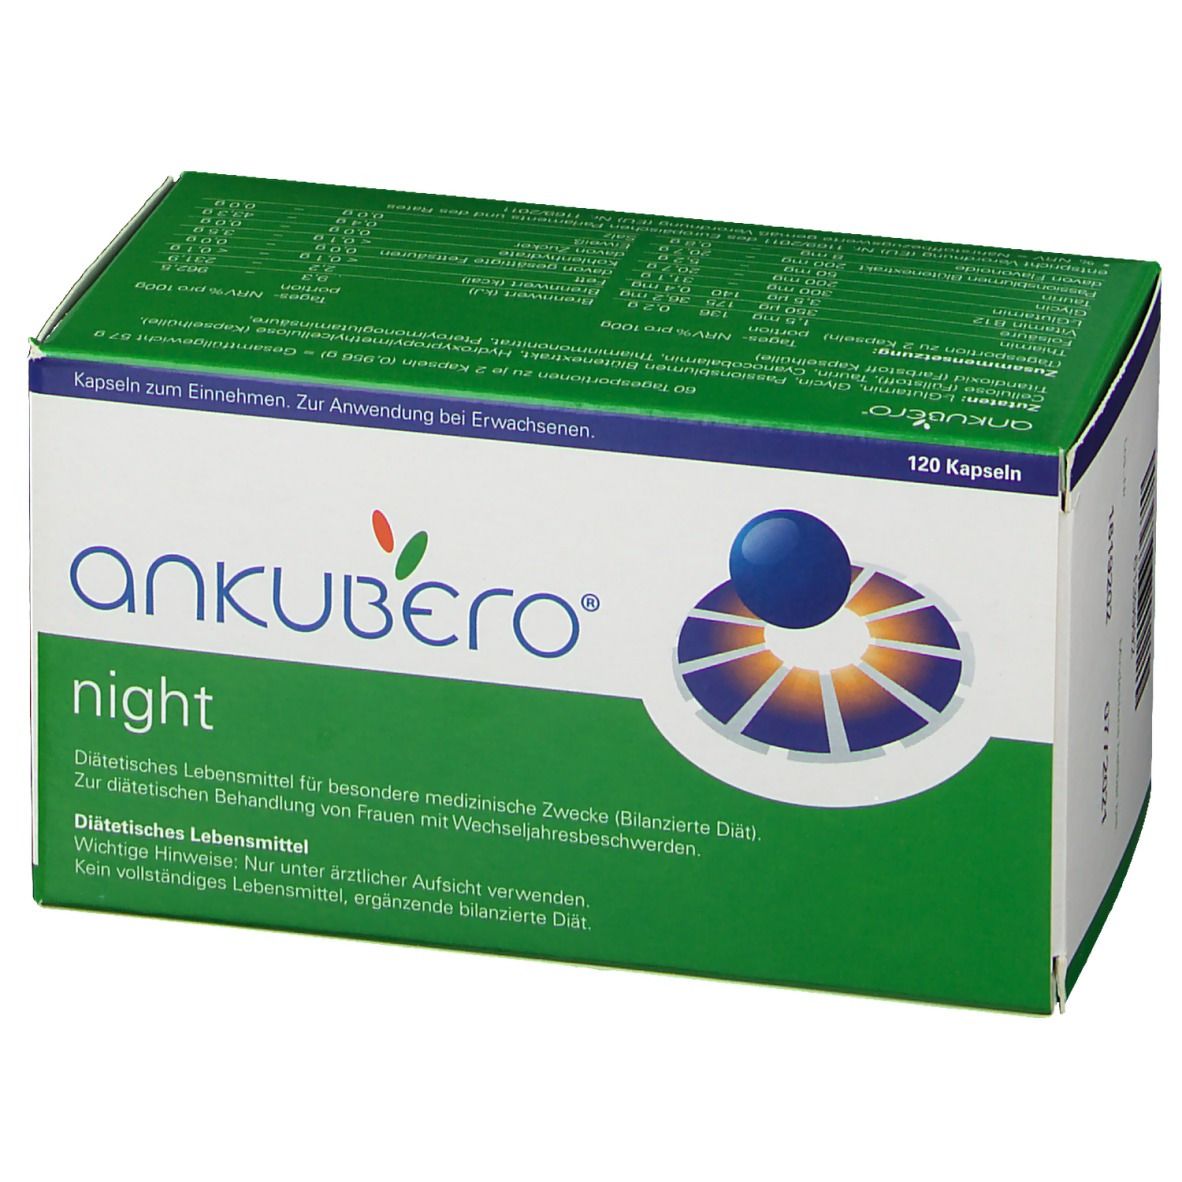 ANKUBERO® night